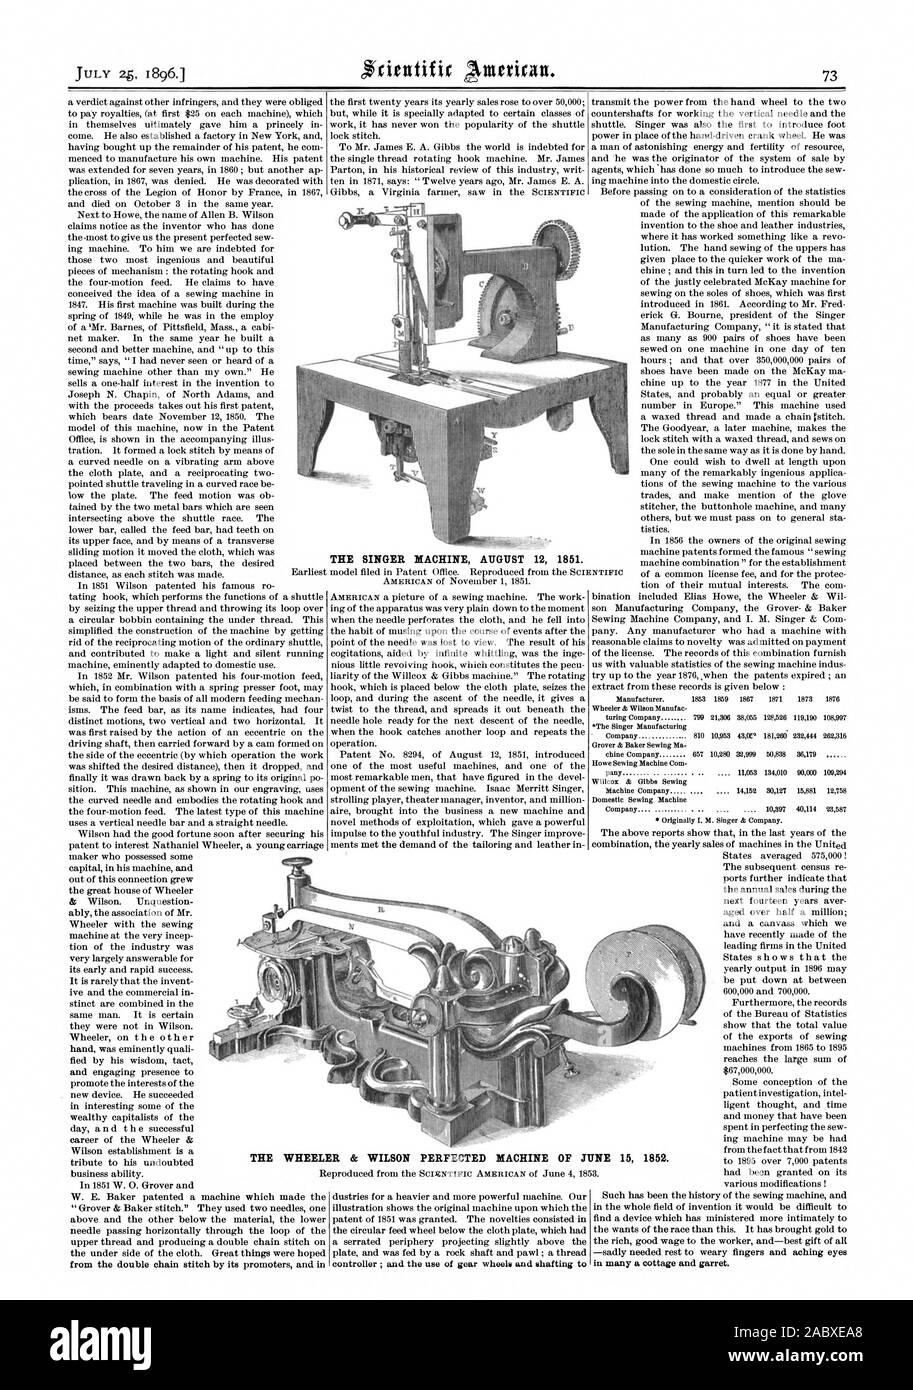 Il cantante macchina 12 agosto 1851. La WHEELER & WILSON macchina perfezionata di Giugno 15 1852., Scientific American, 1896-07-25 Foto Stock